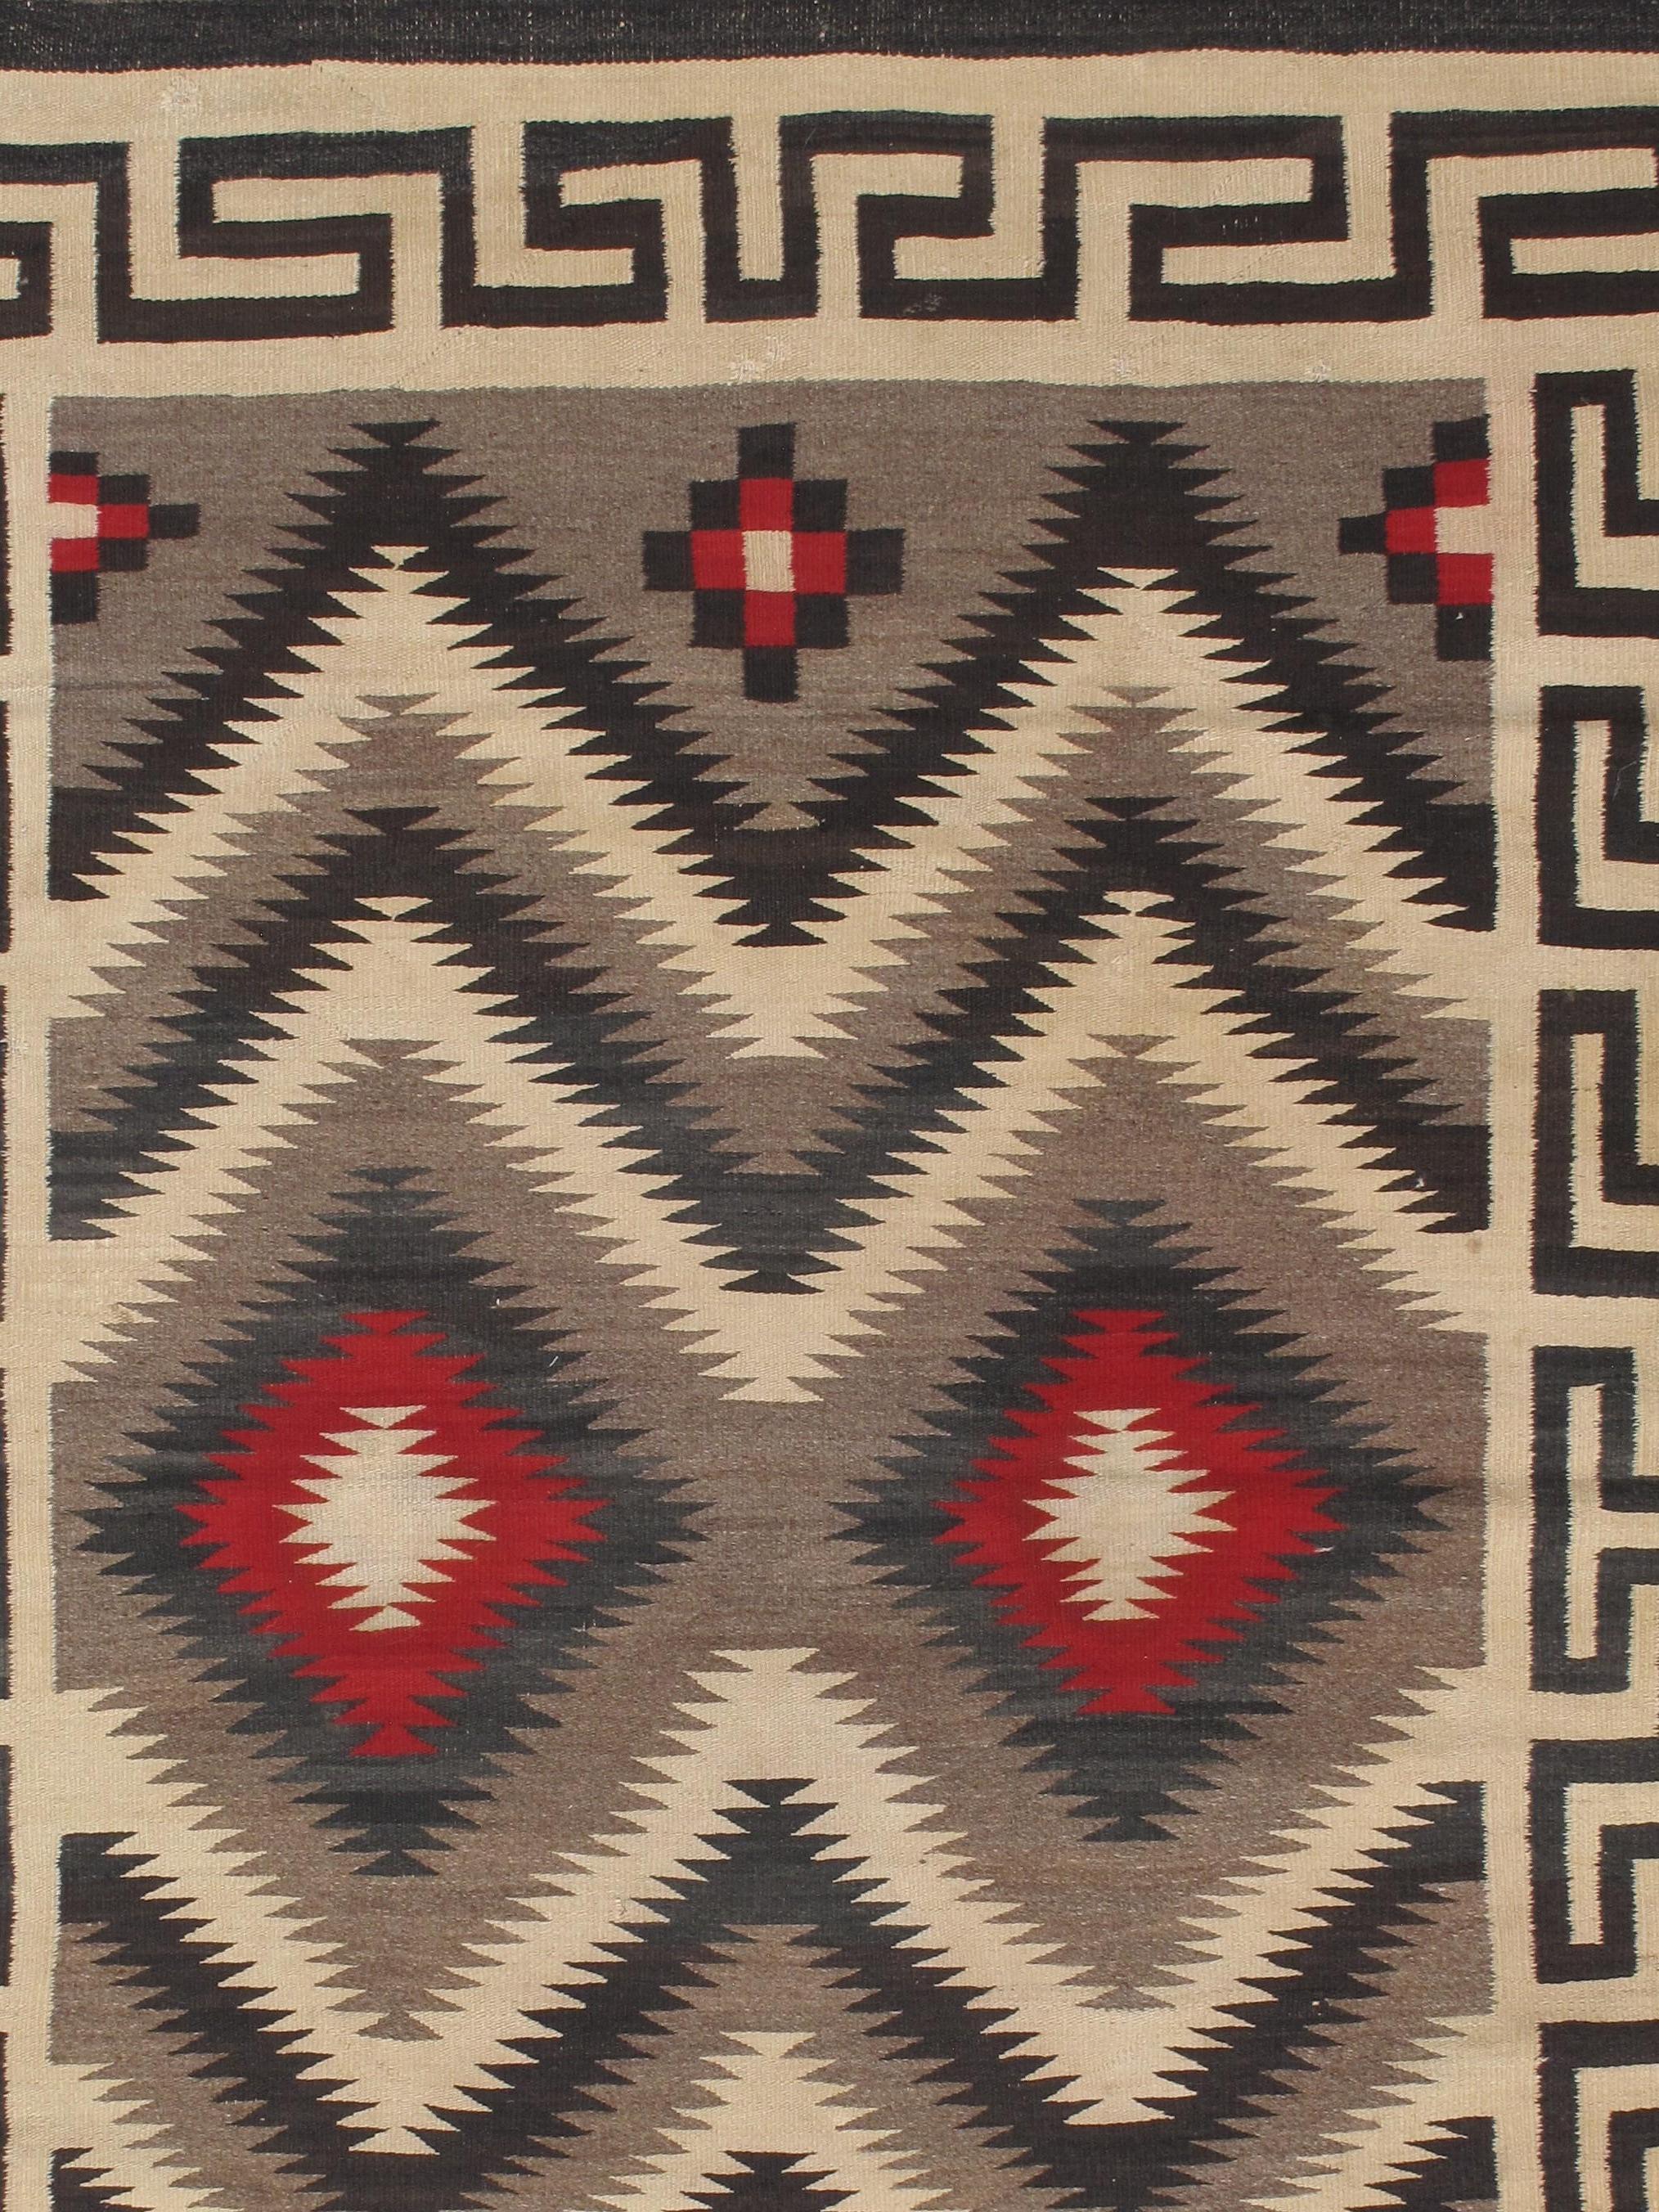 Les tapis et couvertures Navajo sont des textiles produits par le peuple Navajo de la région des Four Corners aux États-Unis. Les textiles Navajo sont très appréciés et sont recherchés comme articles de commerce depuis plus de 150 ans. La production